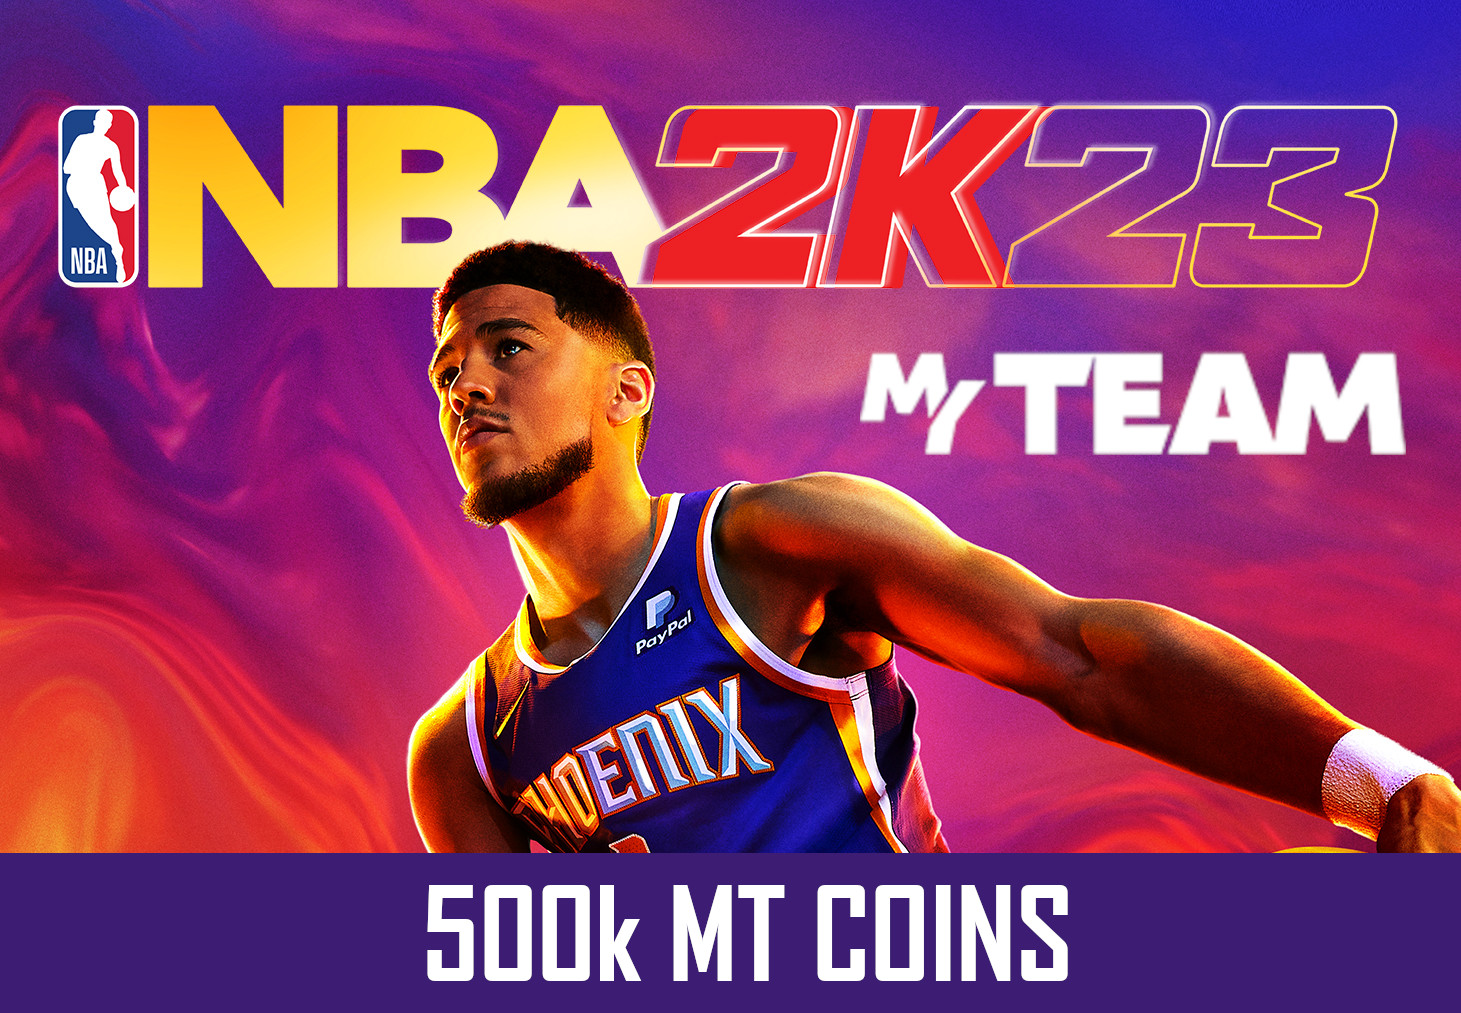 NBA 2K23 - 500k MT Coins - GLOBAL XBOX One/Series X,S